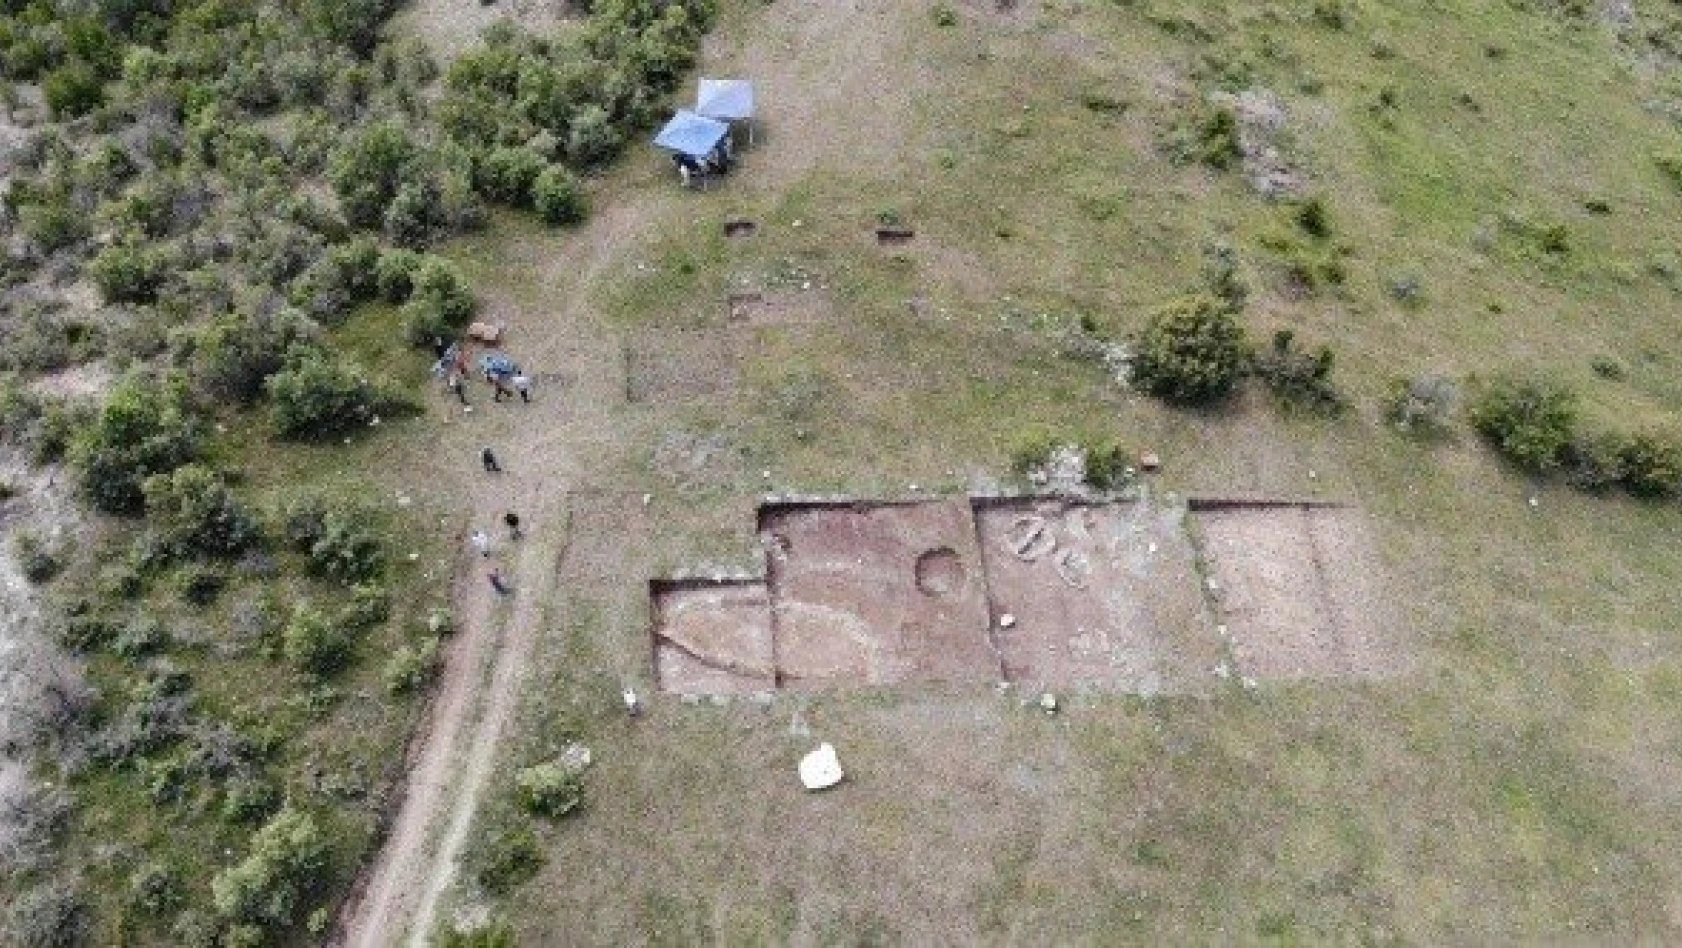 12 bin yıllık Kahin Tepe'de kazı çalışmaları devam ediyor